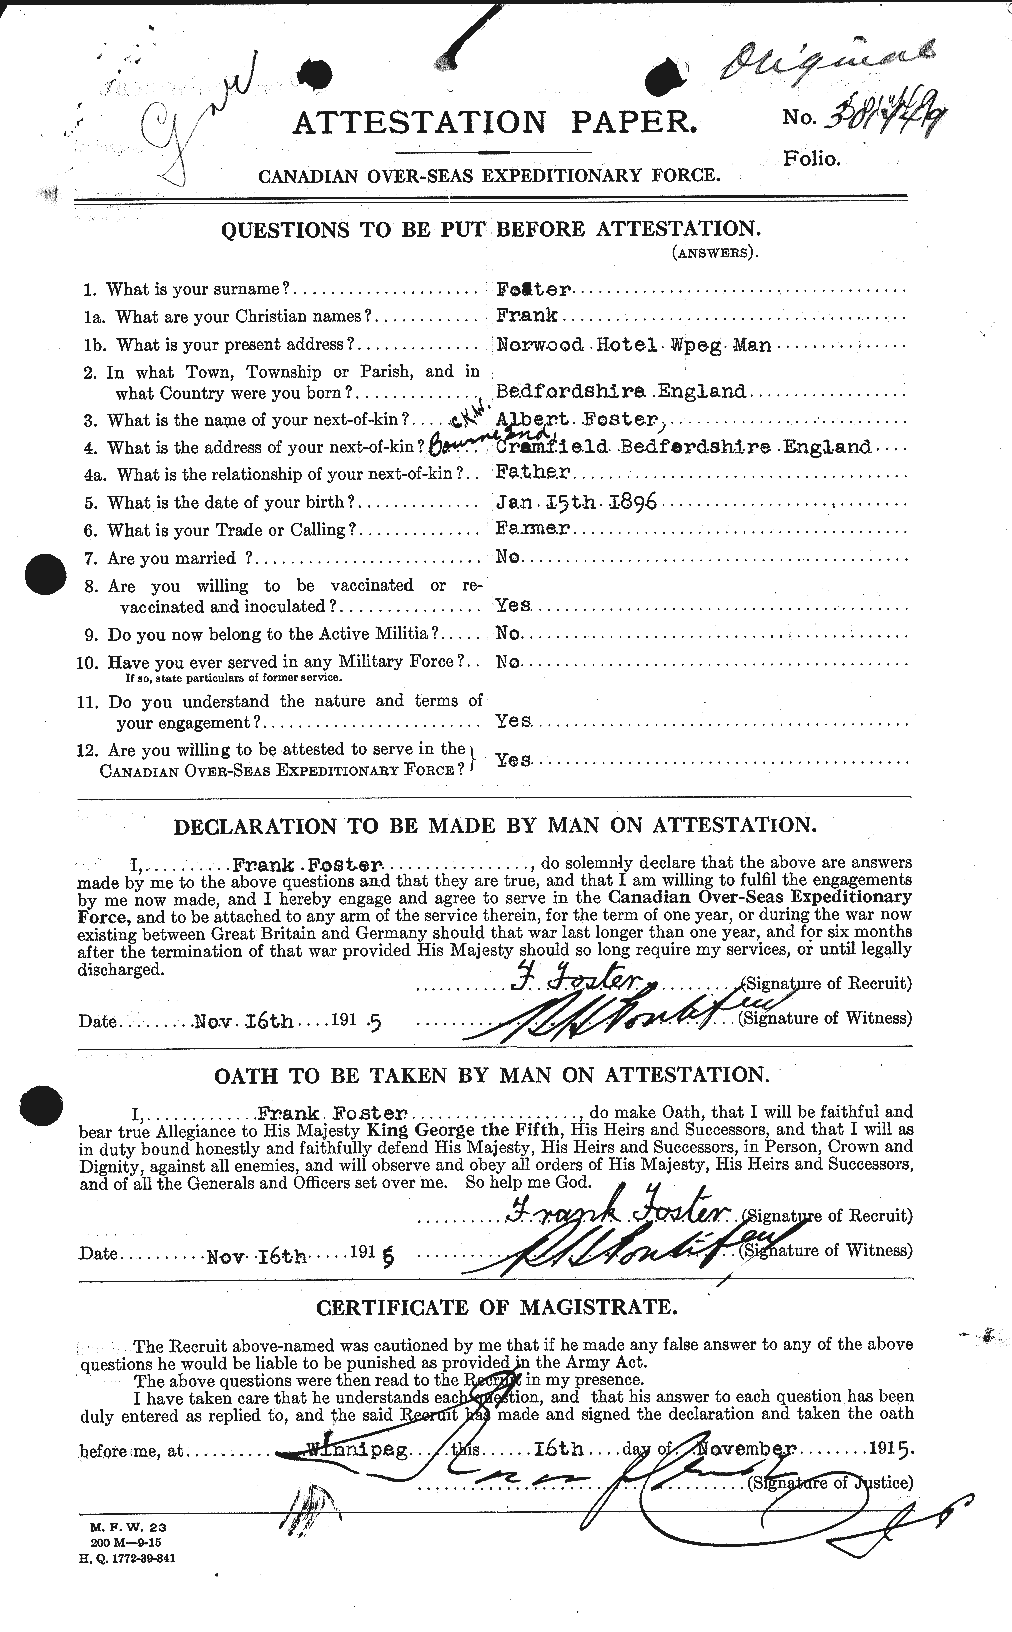 Dossiers du Personnel de la Première Guerre mondiale - CEC 330621a